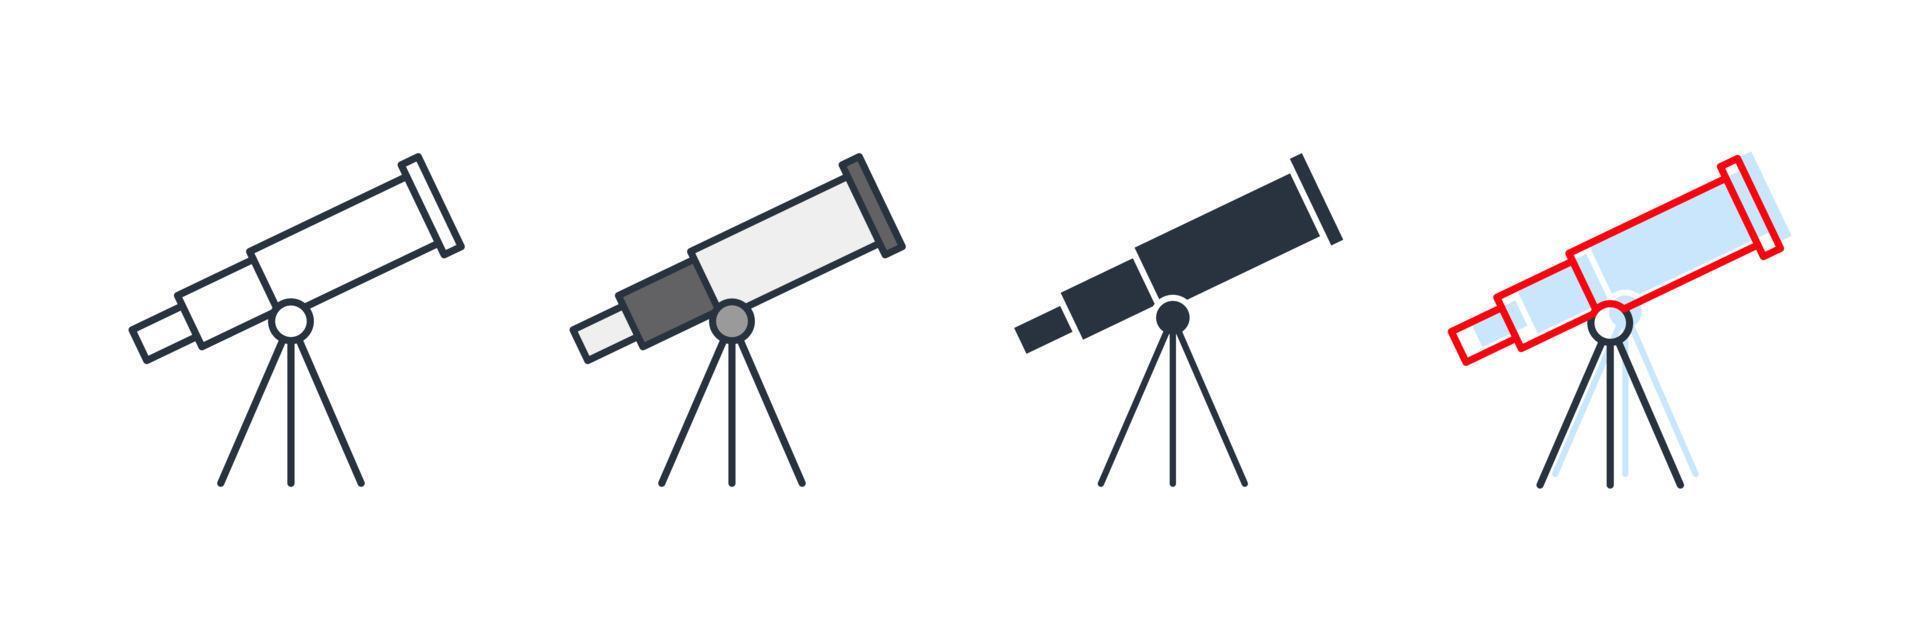 Astronomie-Symbol-Logo-Vektor-Illustration. Teleskop-Symbolvorlage für Grafik- und Webdesign-Sammlung vektor